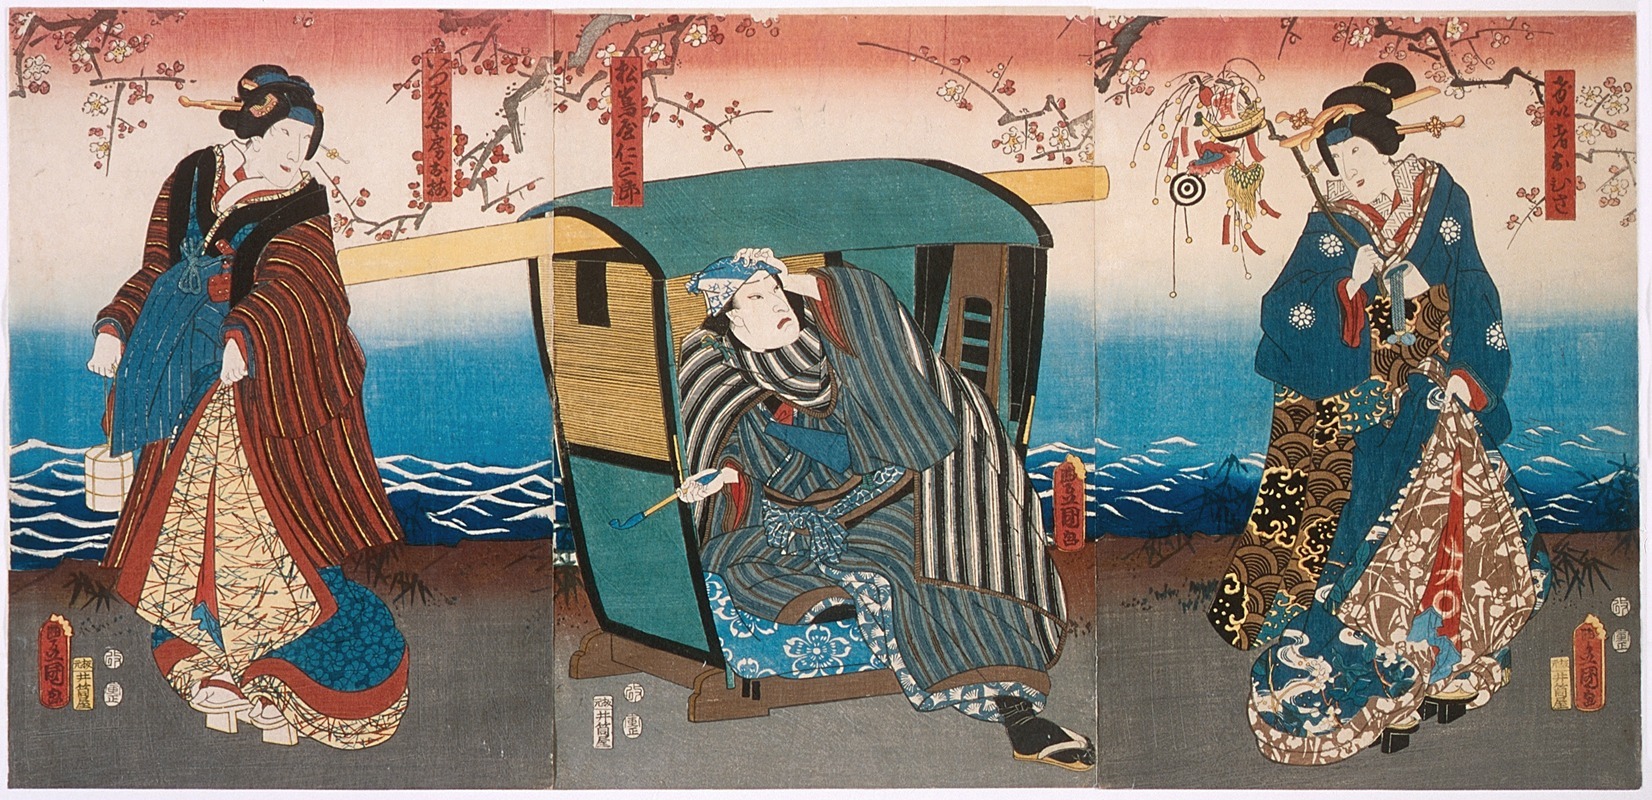 Utagawa Kunisada (Toyokuni III) - Iwai Hanshirō VIII as Geisha Ohisa, Kataoka Gadō II as Matsushiyama Jinzaburō, and Onoe Kikujirō II as Izumiya’s wife Oume in the Play Matsuichō tsurukame Soga